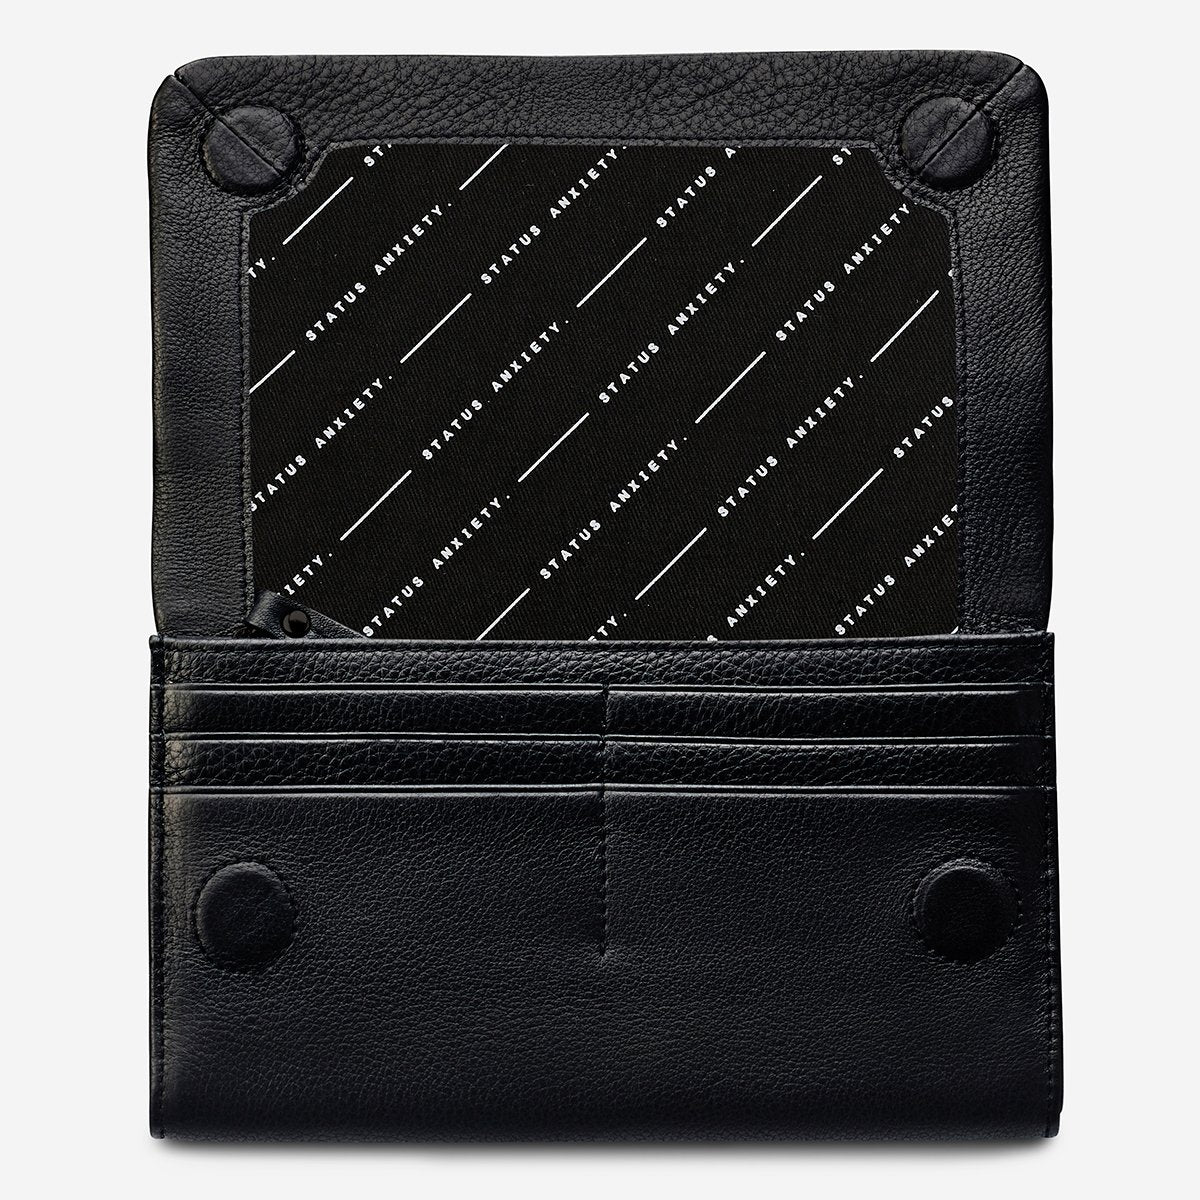 REMNANT Black wallet